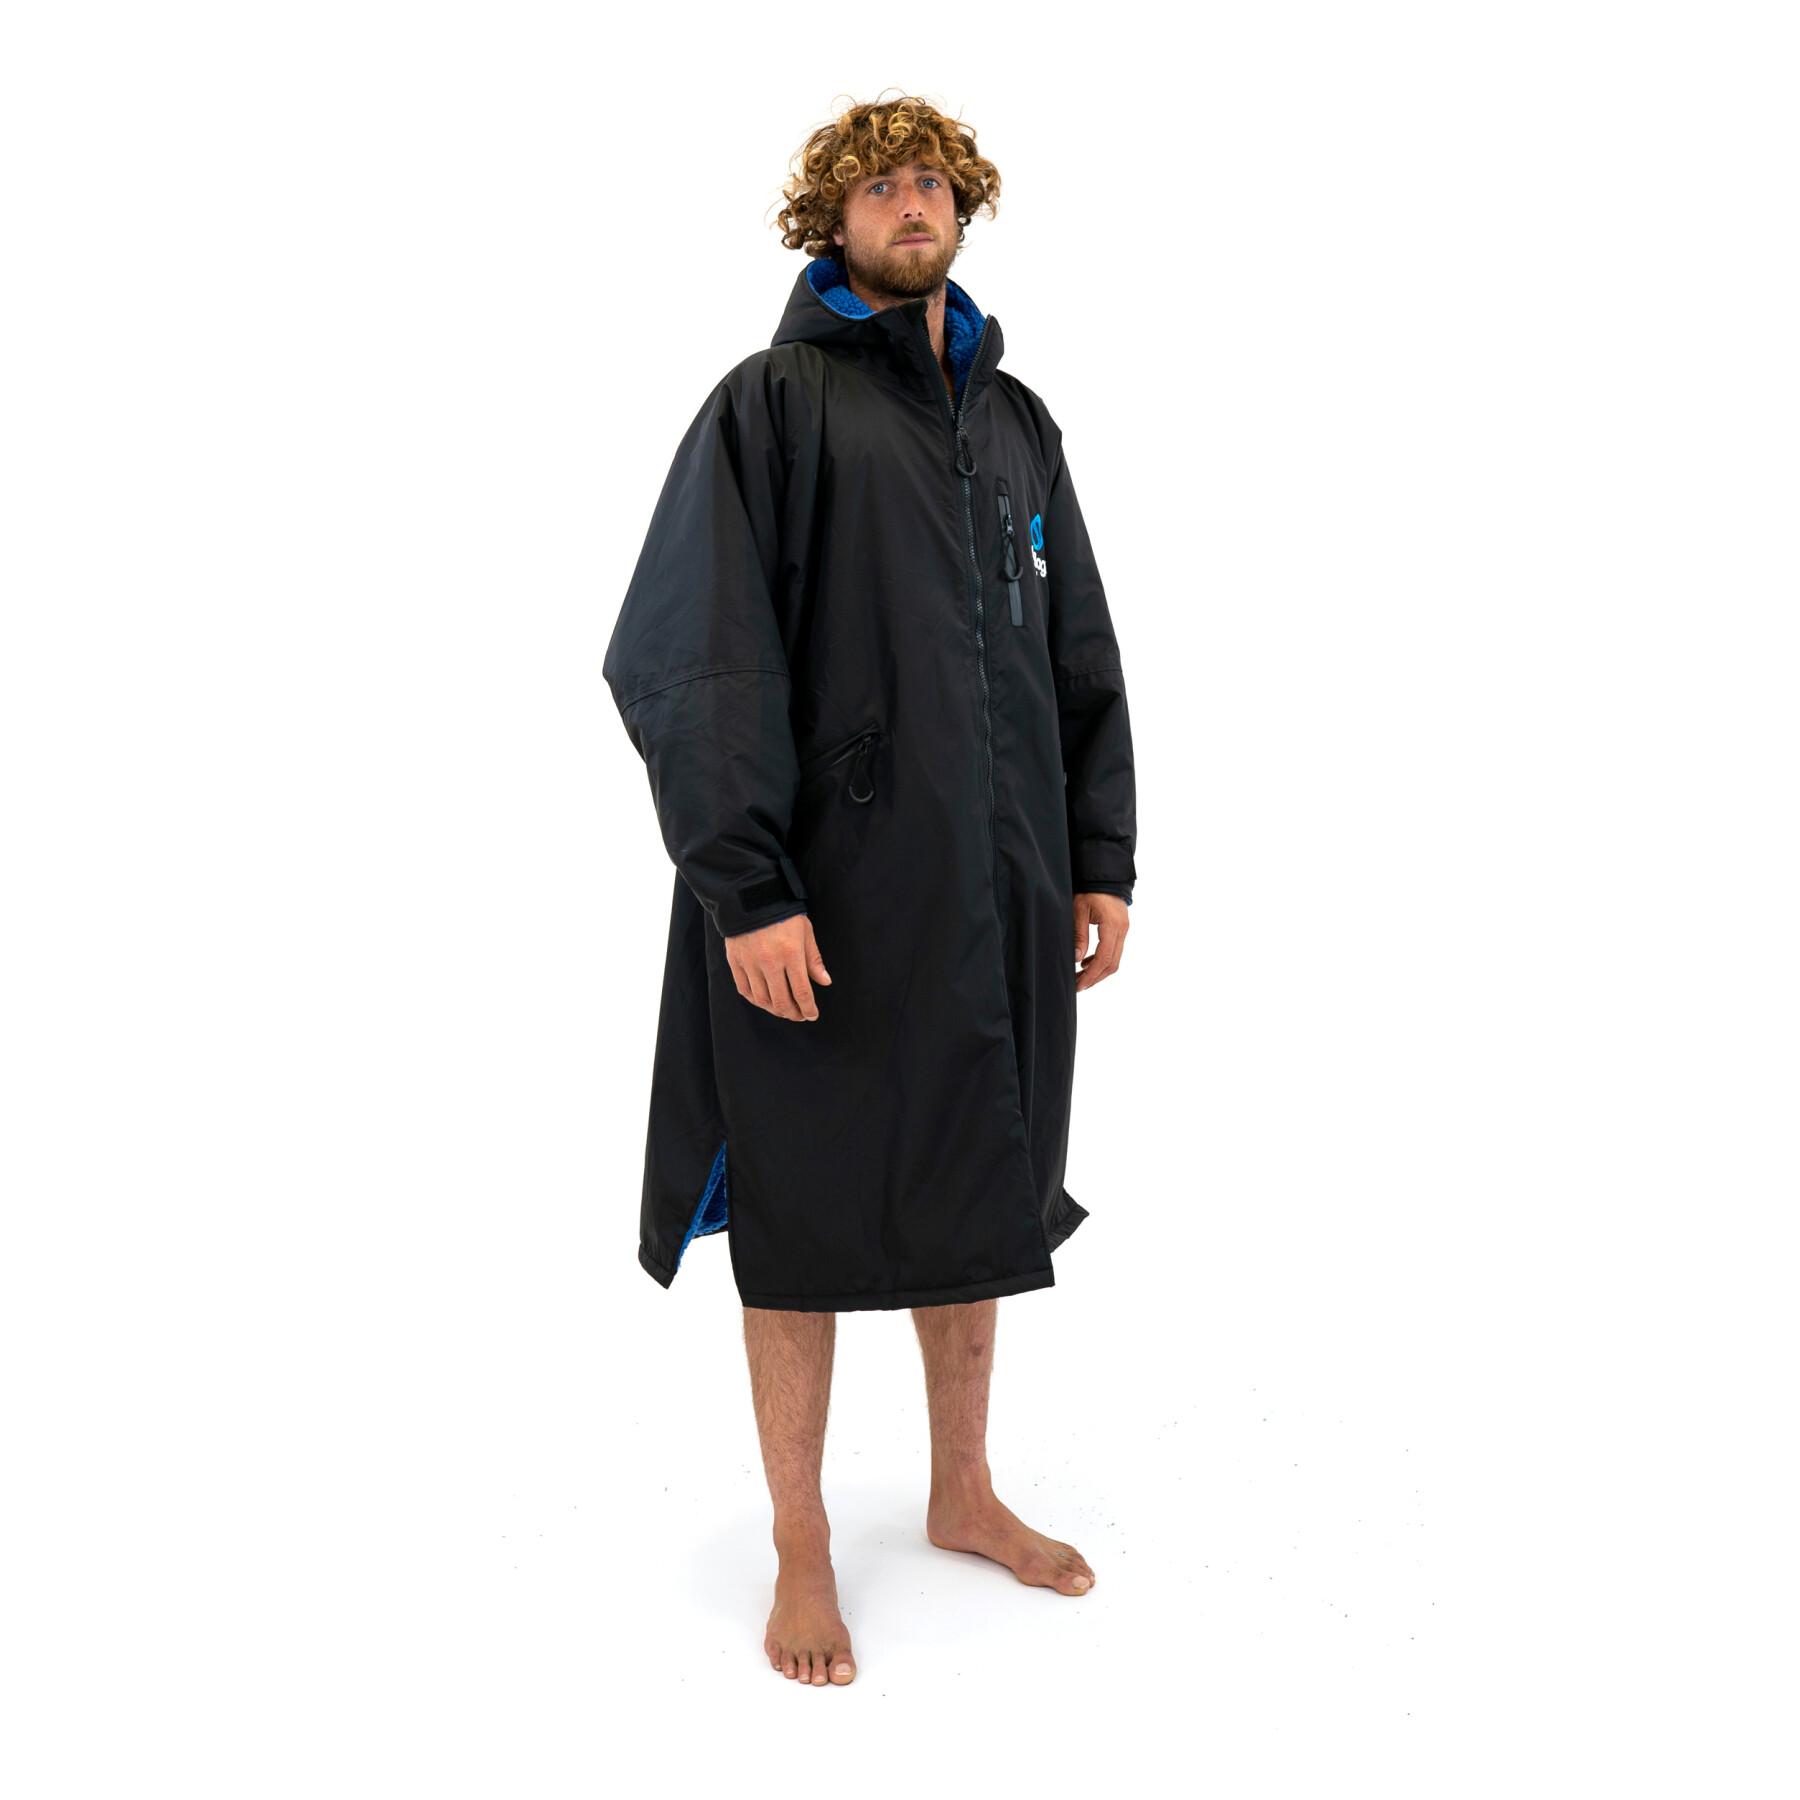 Raincoat long dress Surflogic